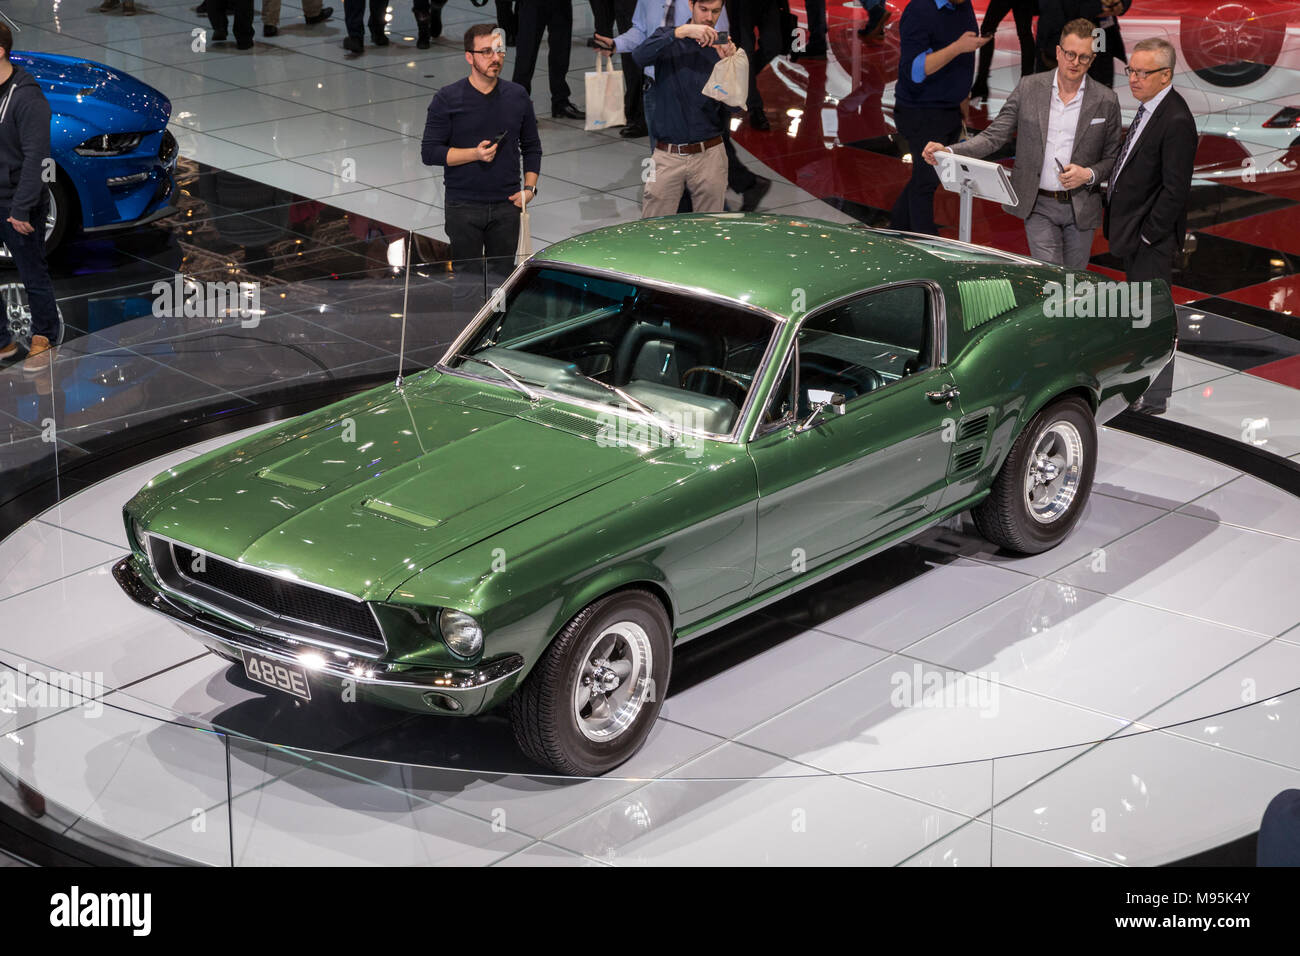 Genève, Suisse - mars 7, 2018 : Ford Mustang Bullitt voiture de sport classique à l'honneur à la 88e Salon International de l'Automobile de Genève. Banque D'Images